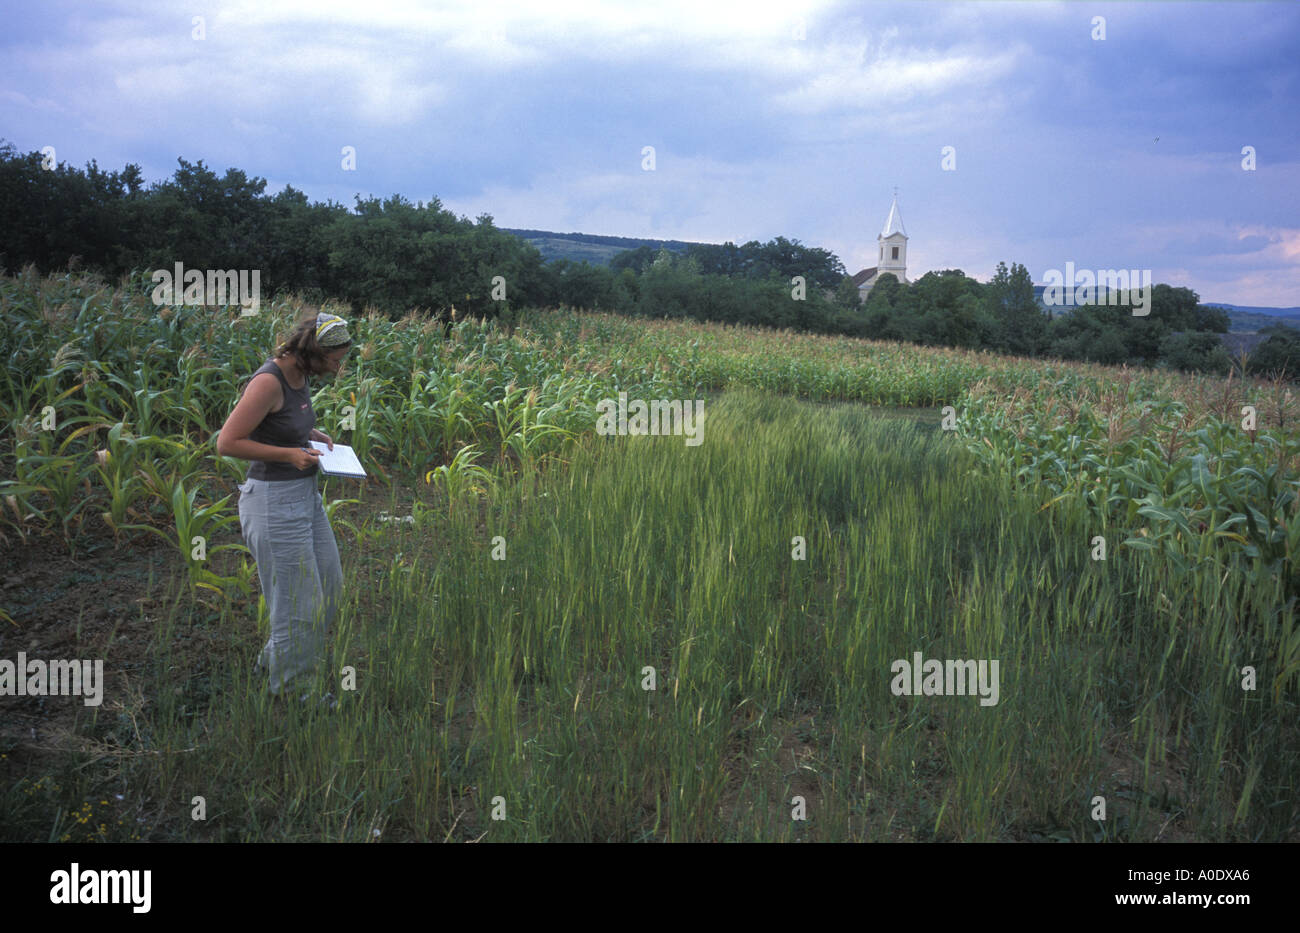 Des études de chercheurs de terrain minuscule de l'engrain une ancienne variété de blé cultivé en Transylvanie Roumanie pour hat faisant Banque D'Images